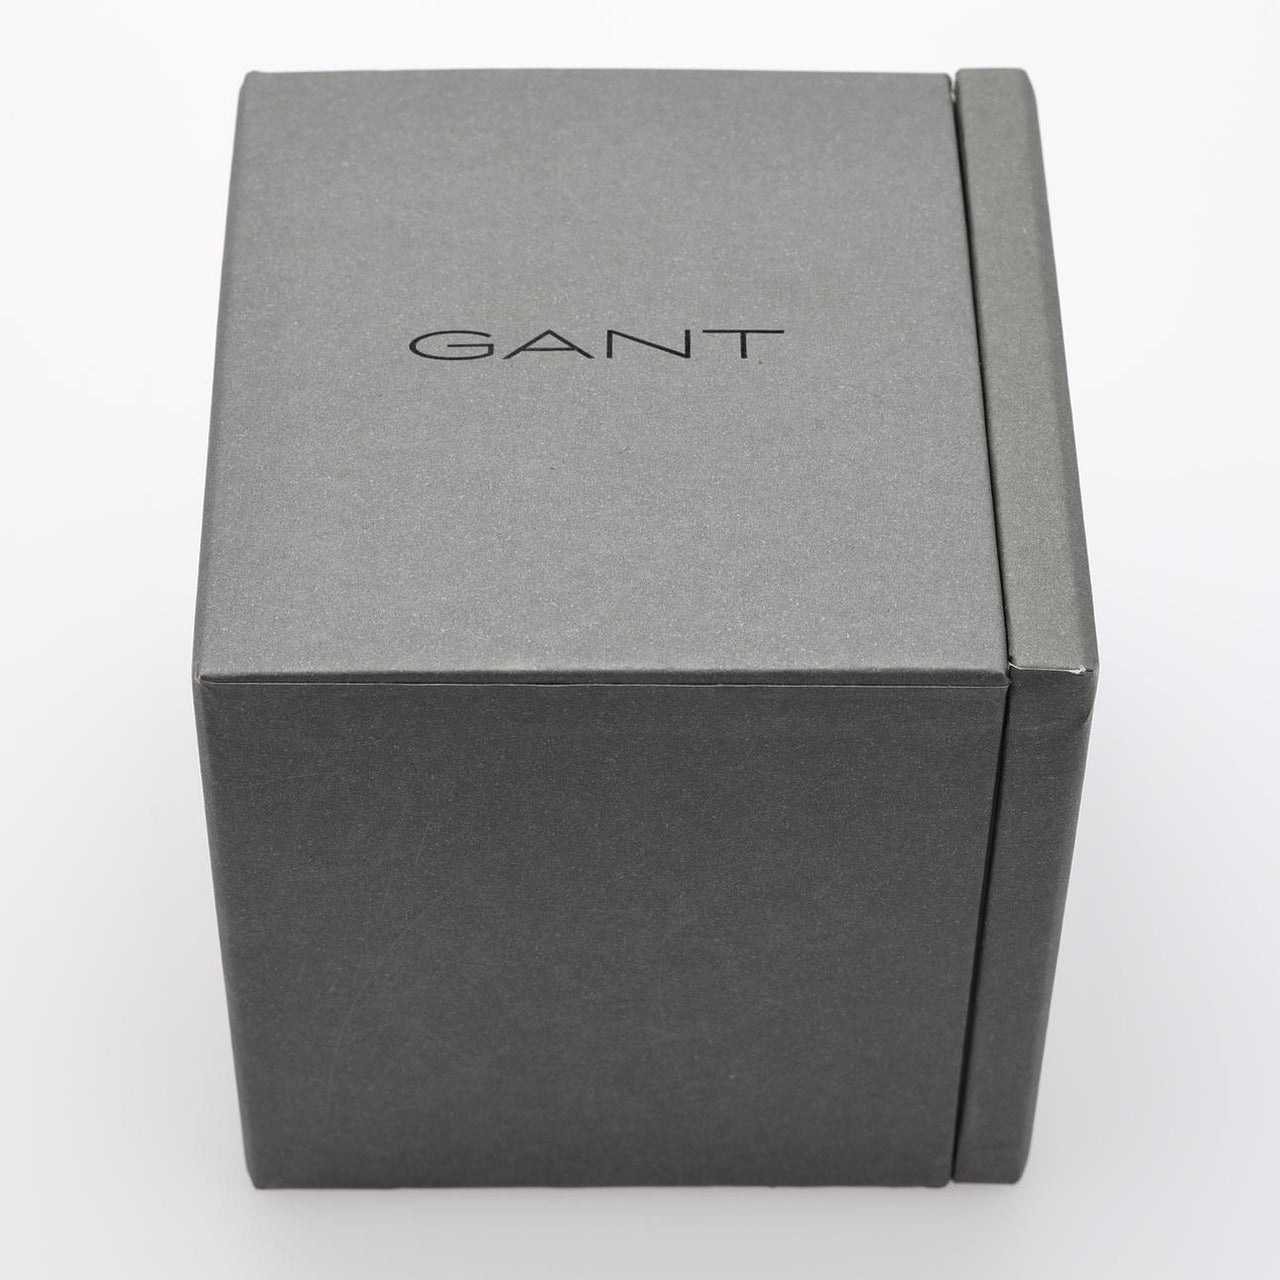 Gant Cleveland Men's Denim Watch G132004